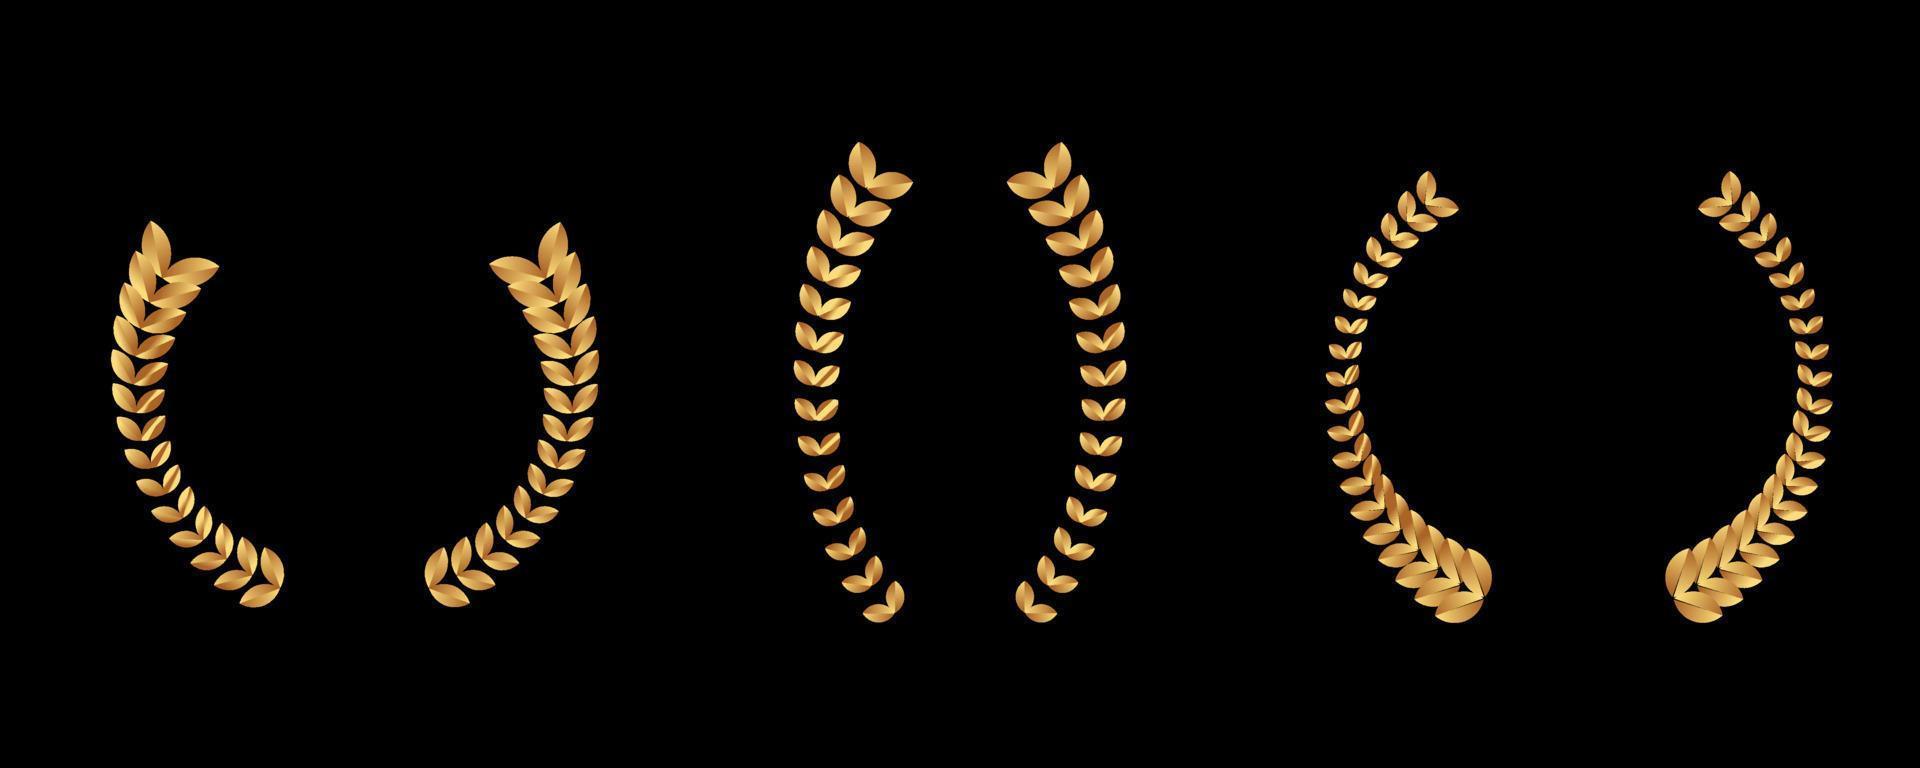 colección de diferentes hojas de laurel circular dorada vintage, trigo y coronas de roble que representan un premio, logro, heráldica, nobleza. ilustración vectorial vector